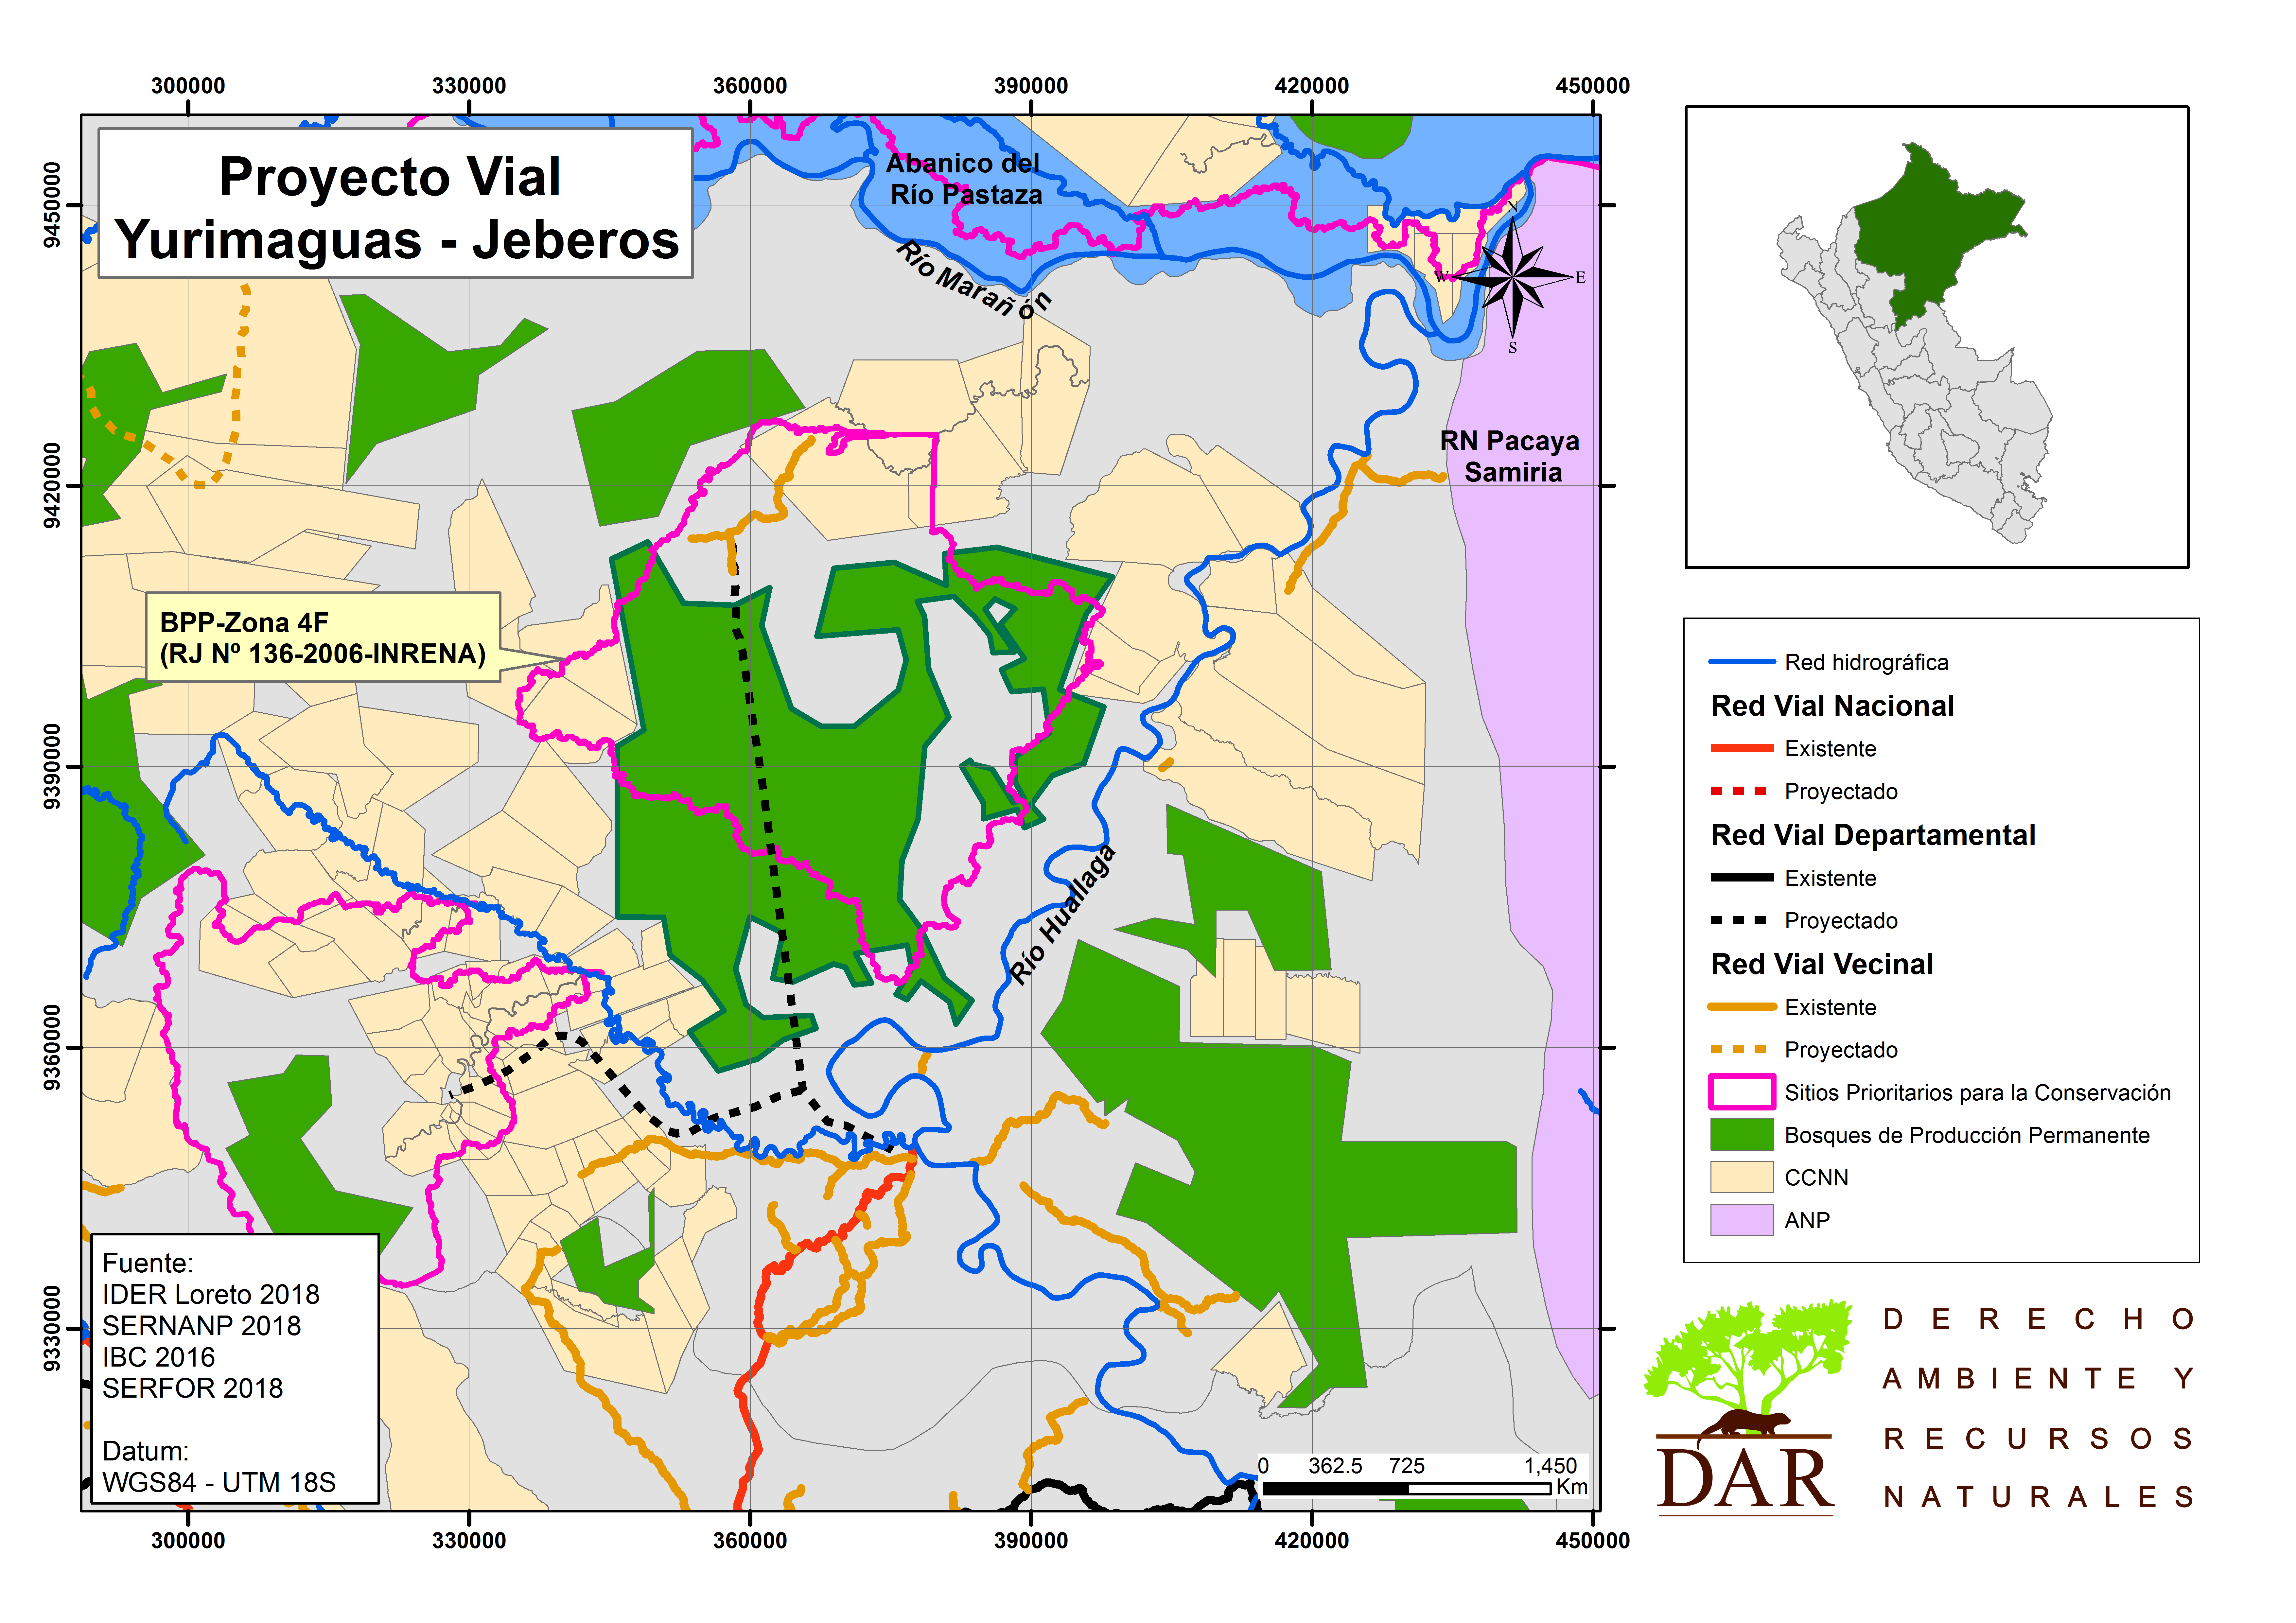 Yurimaguas-Jeberos: La carretera que atravesaría Bosque de Producción Permanente y Sitio Prioritario para la Conservación de Loreto